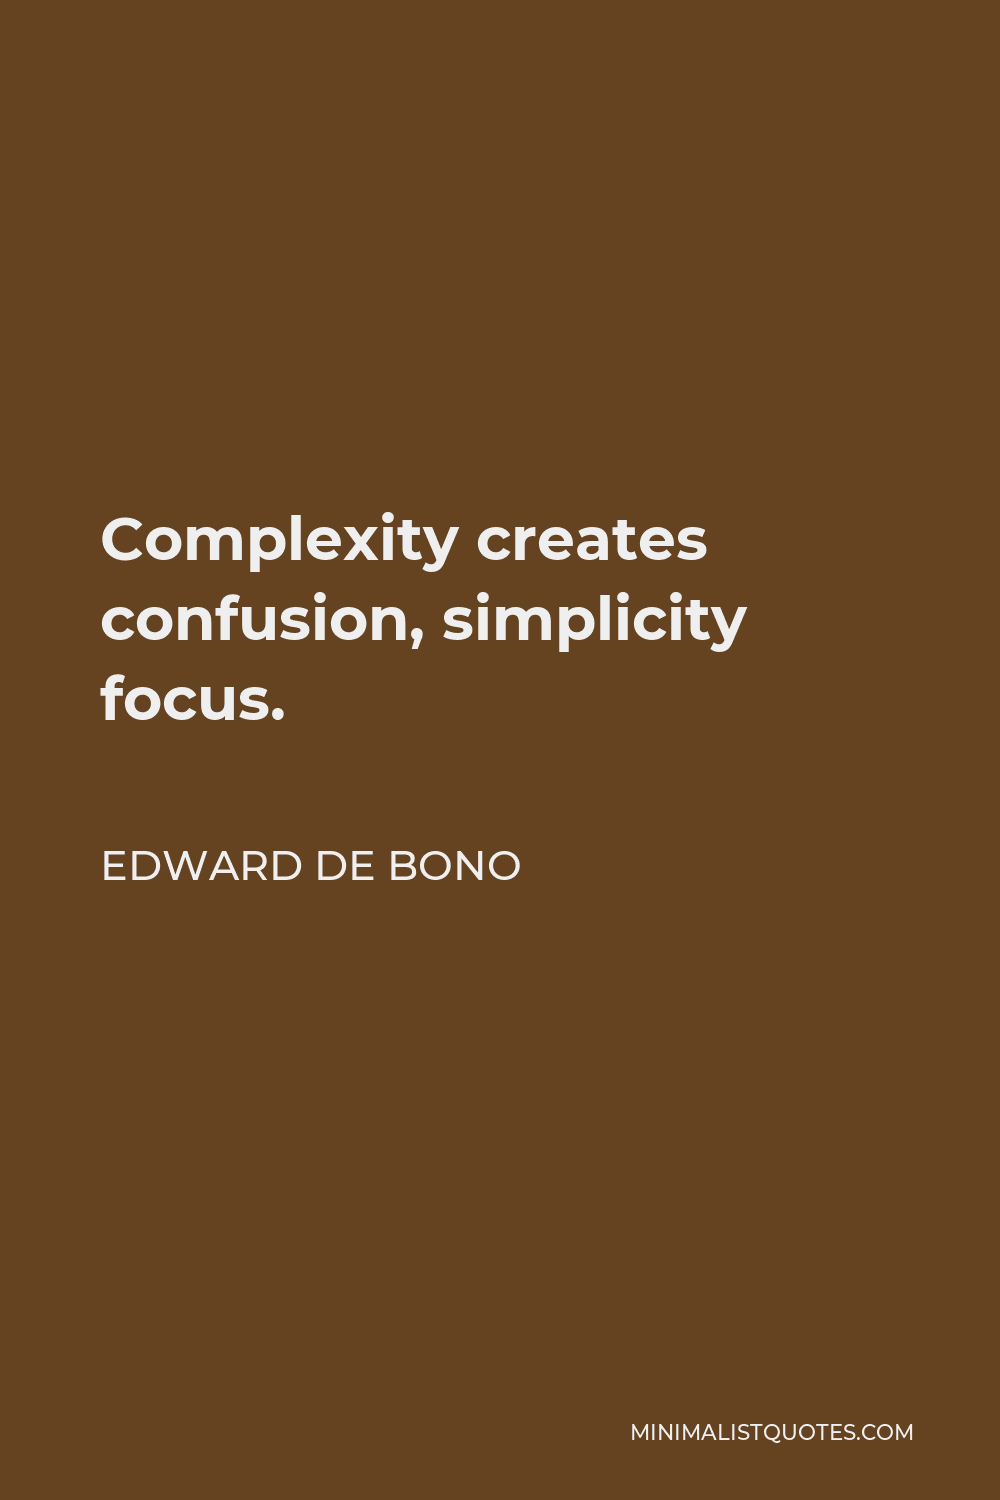 Edward de Bono Quote - Complexity creates confusion, simplicity focus.